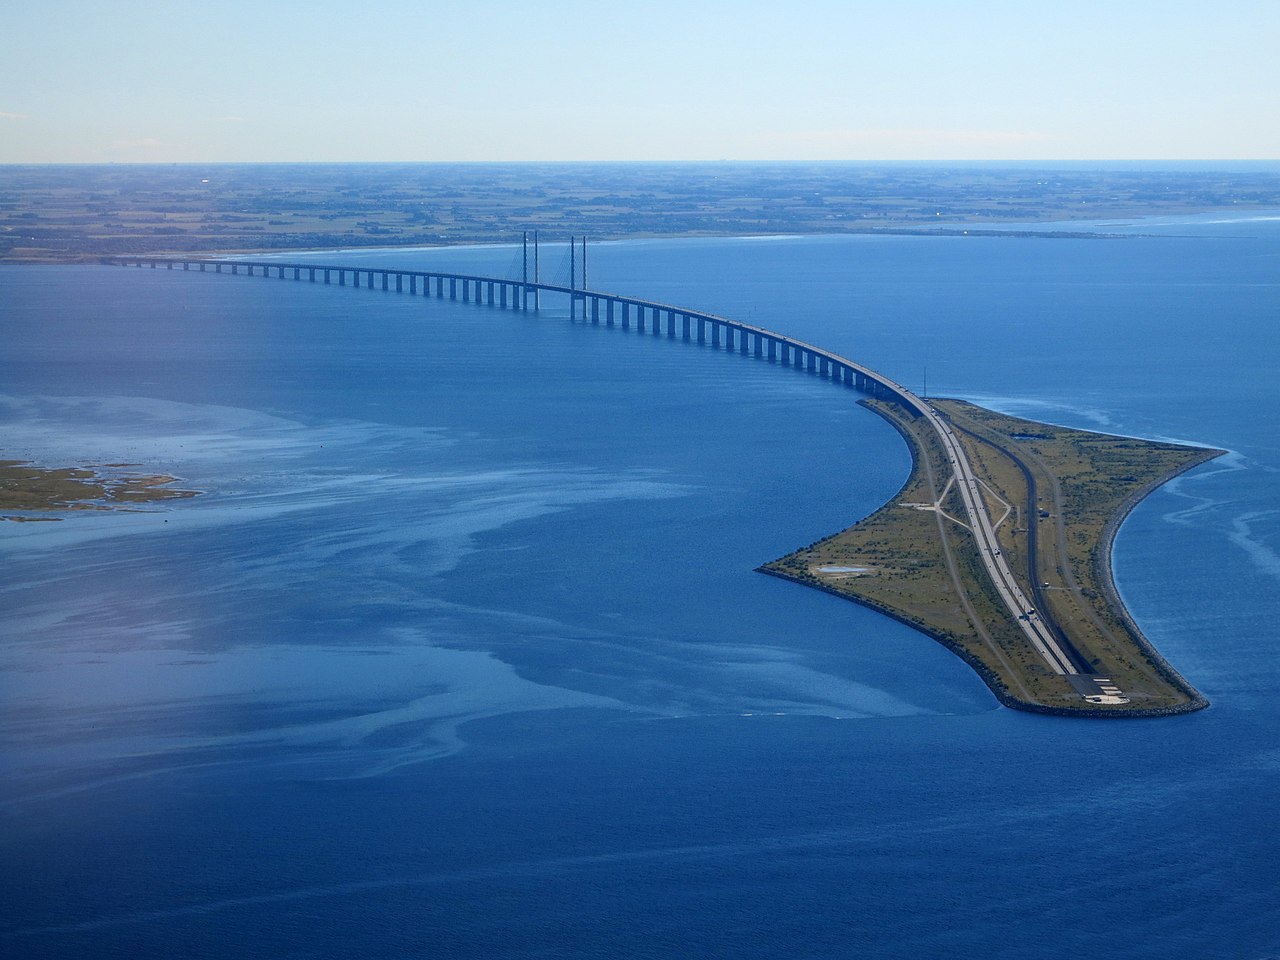 Øresund Bridge from the air in September 2015.jpg